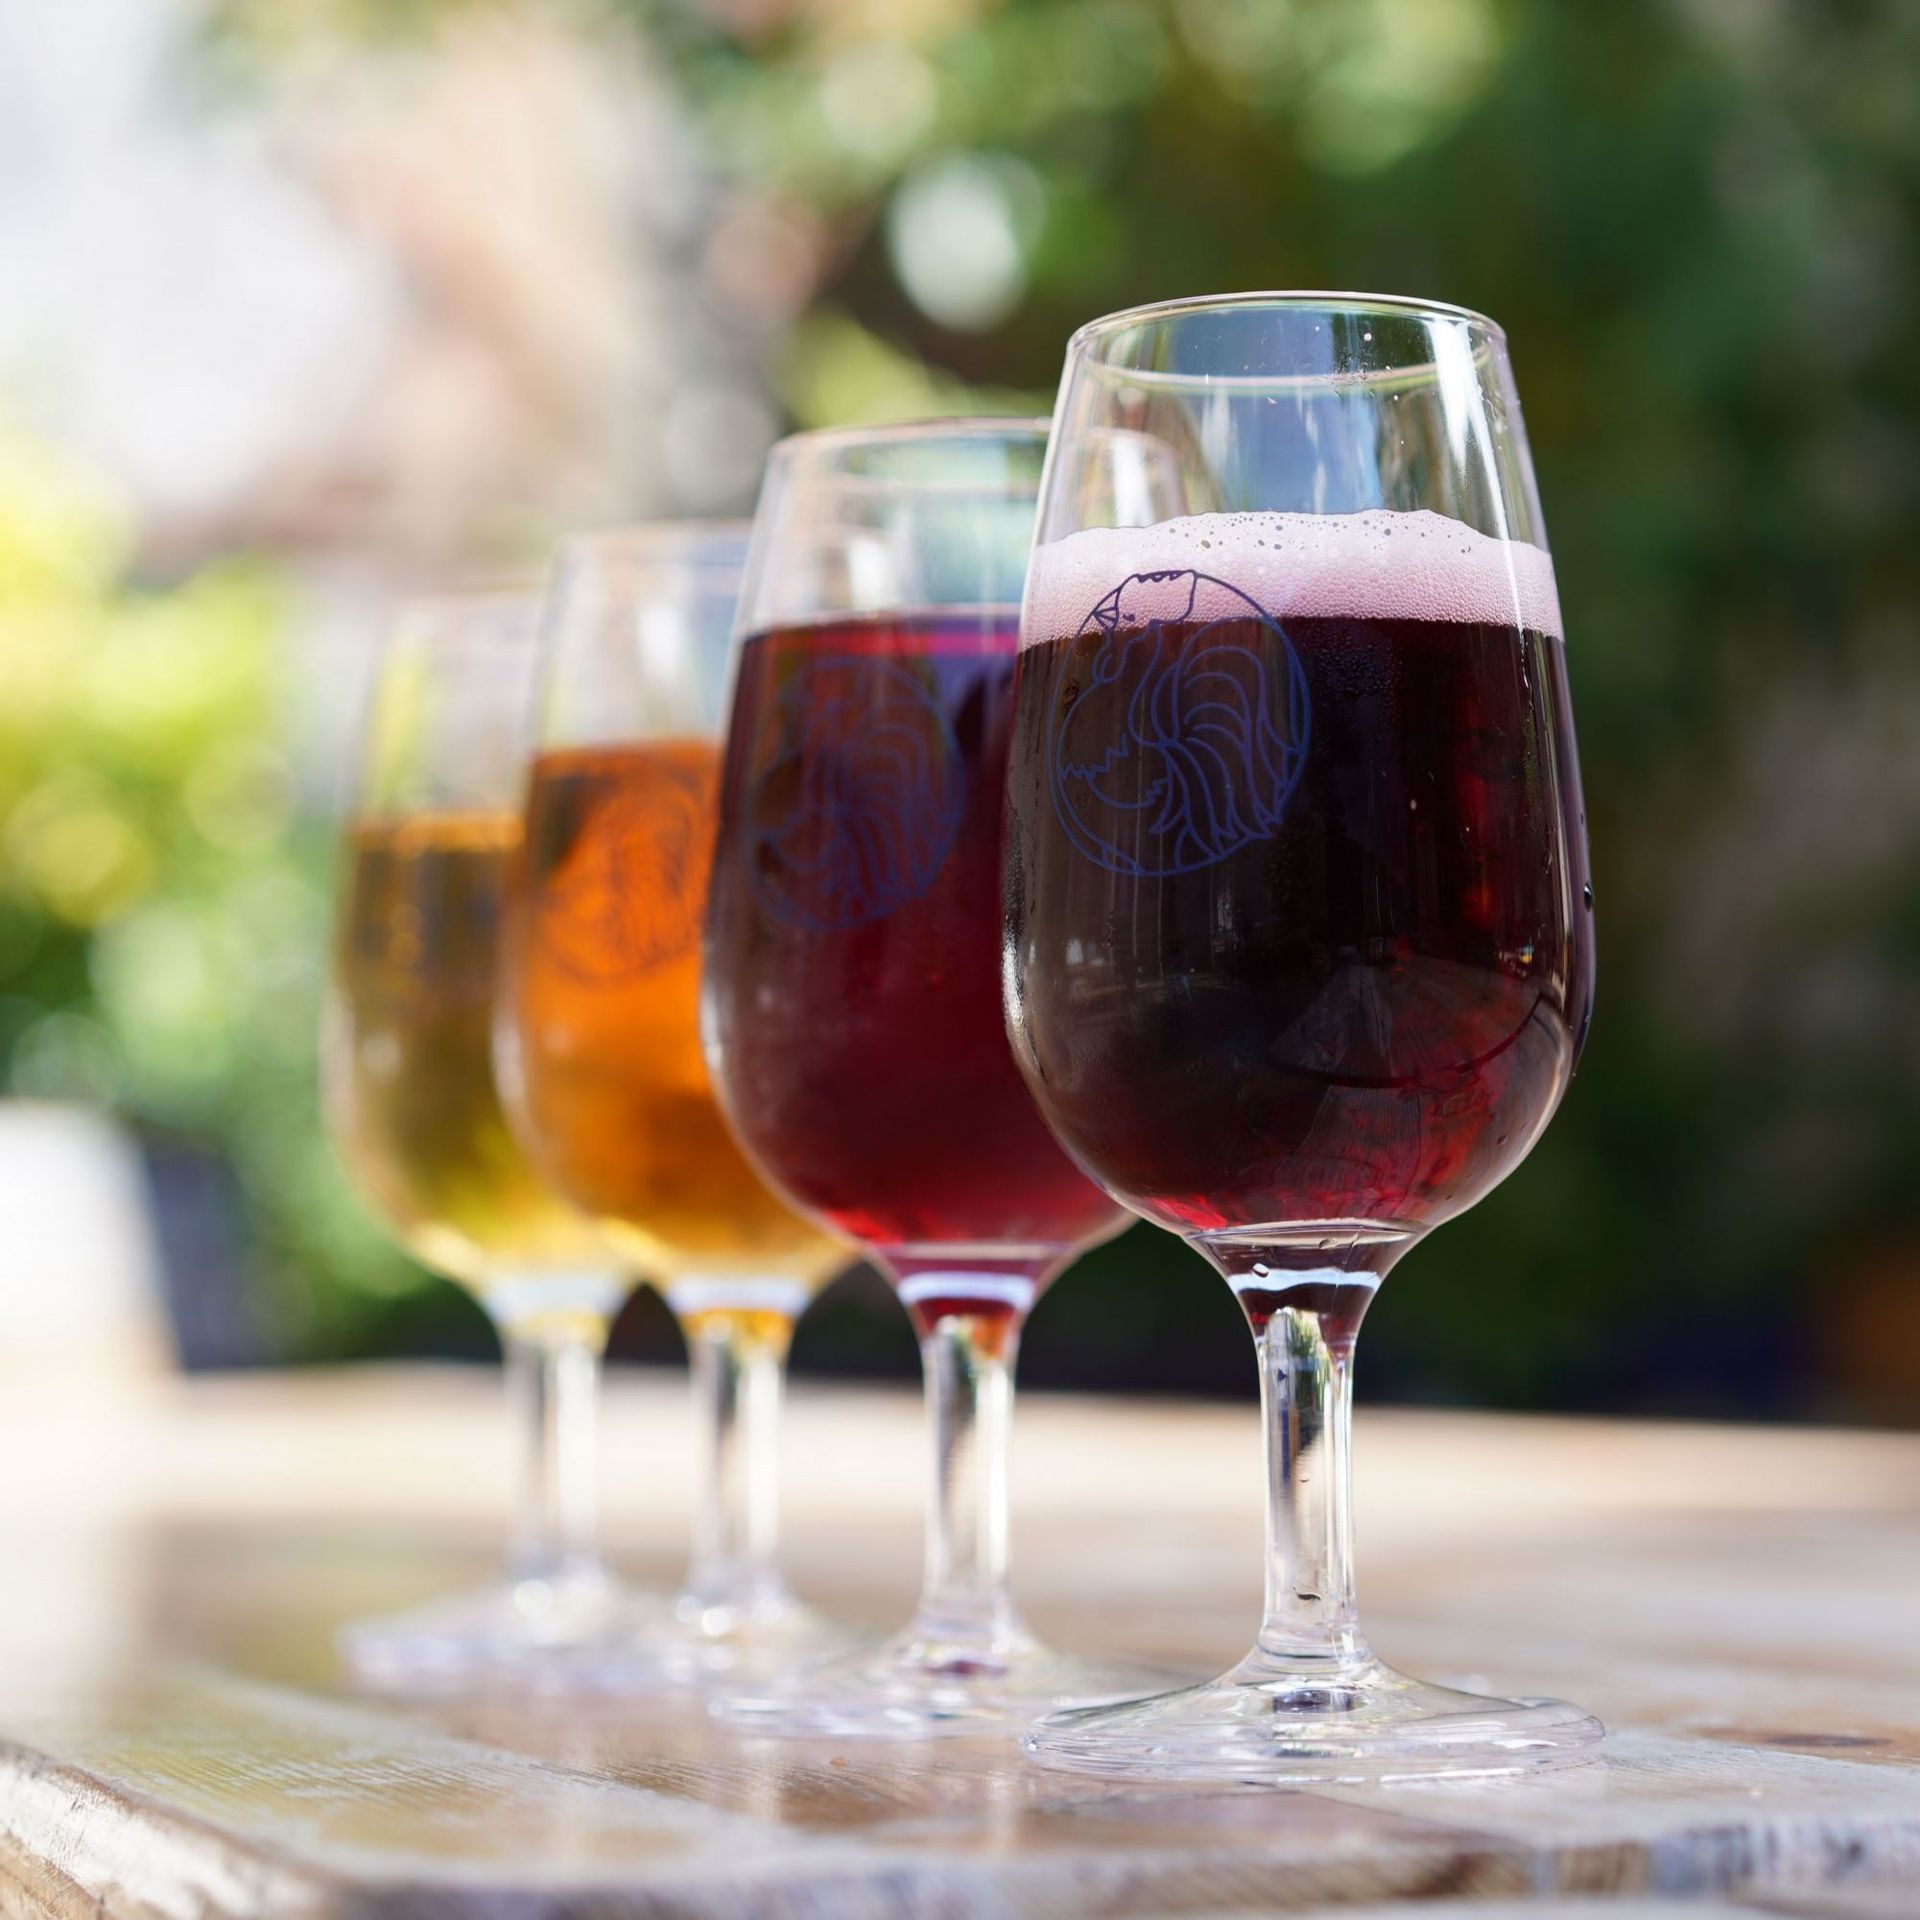 La vière, cette nouvelle boisson hybride entre la bière et le vin